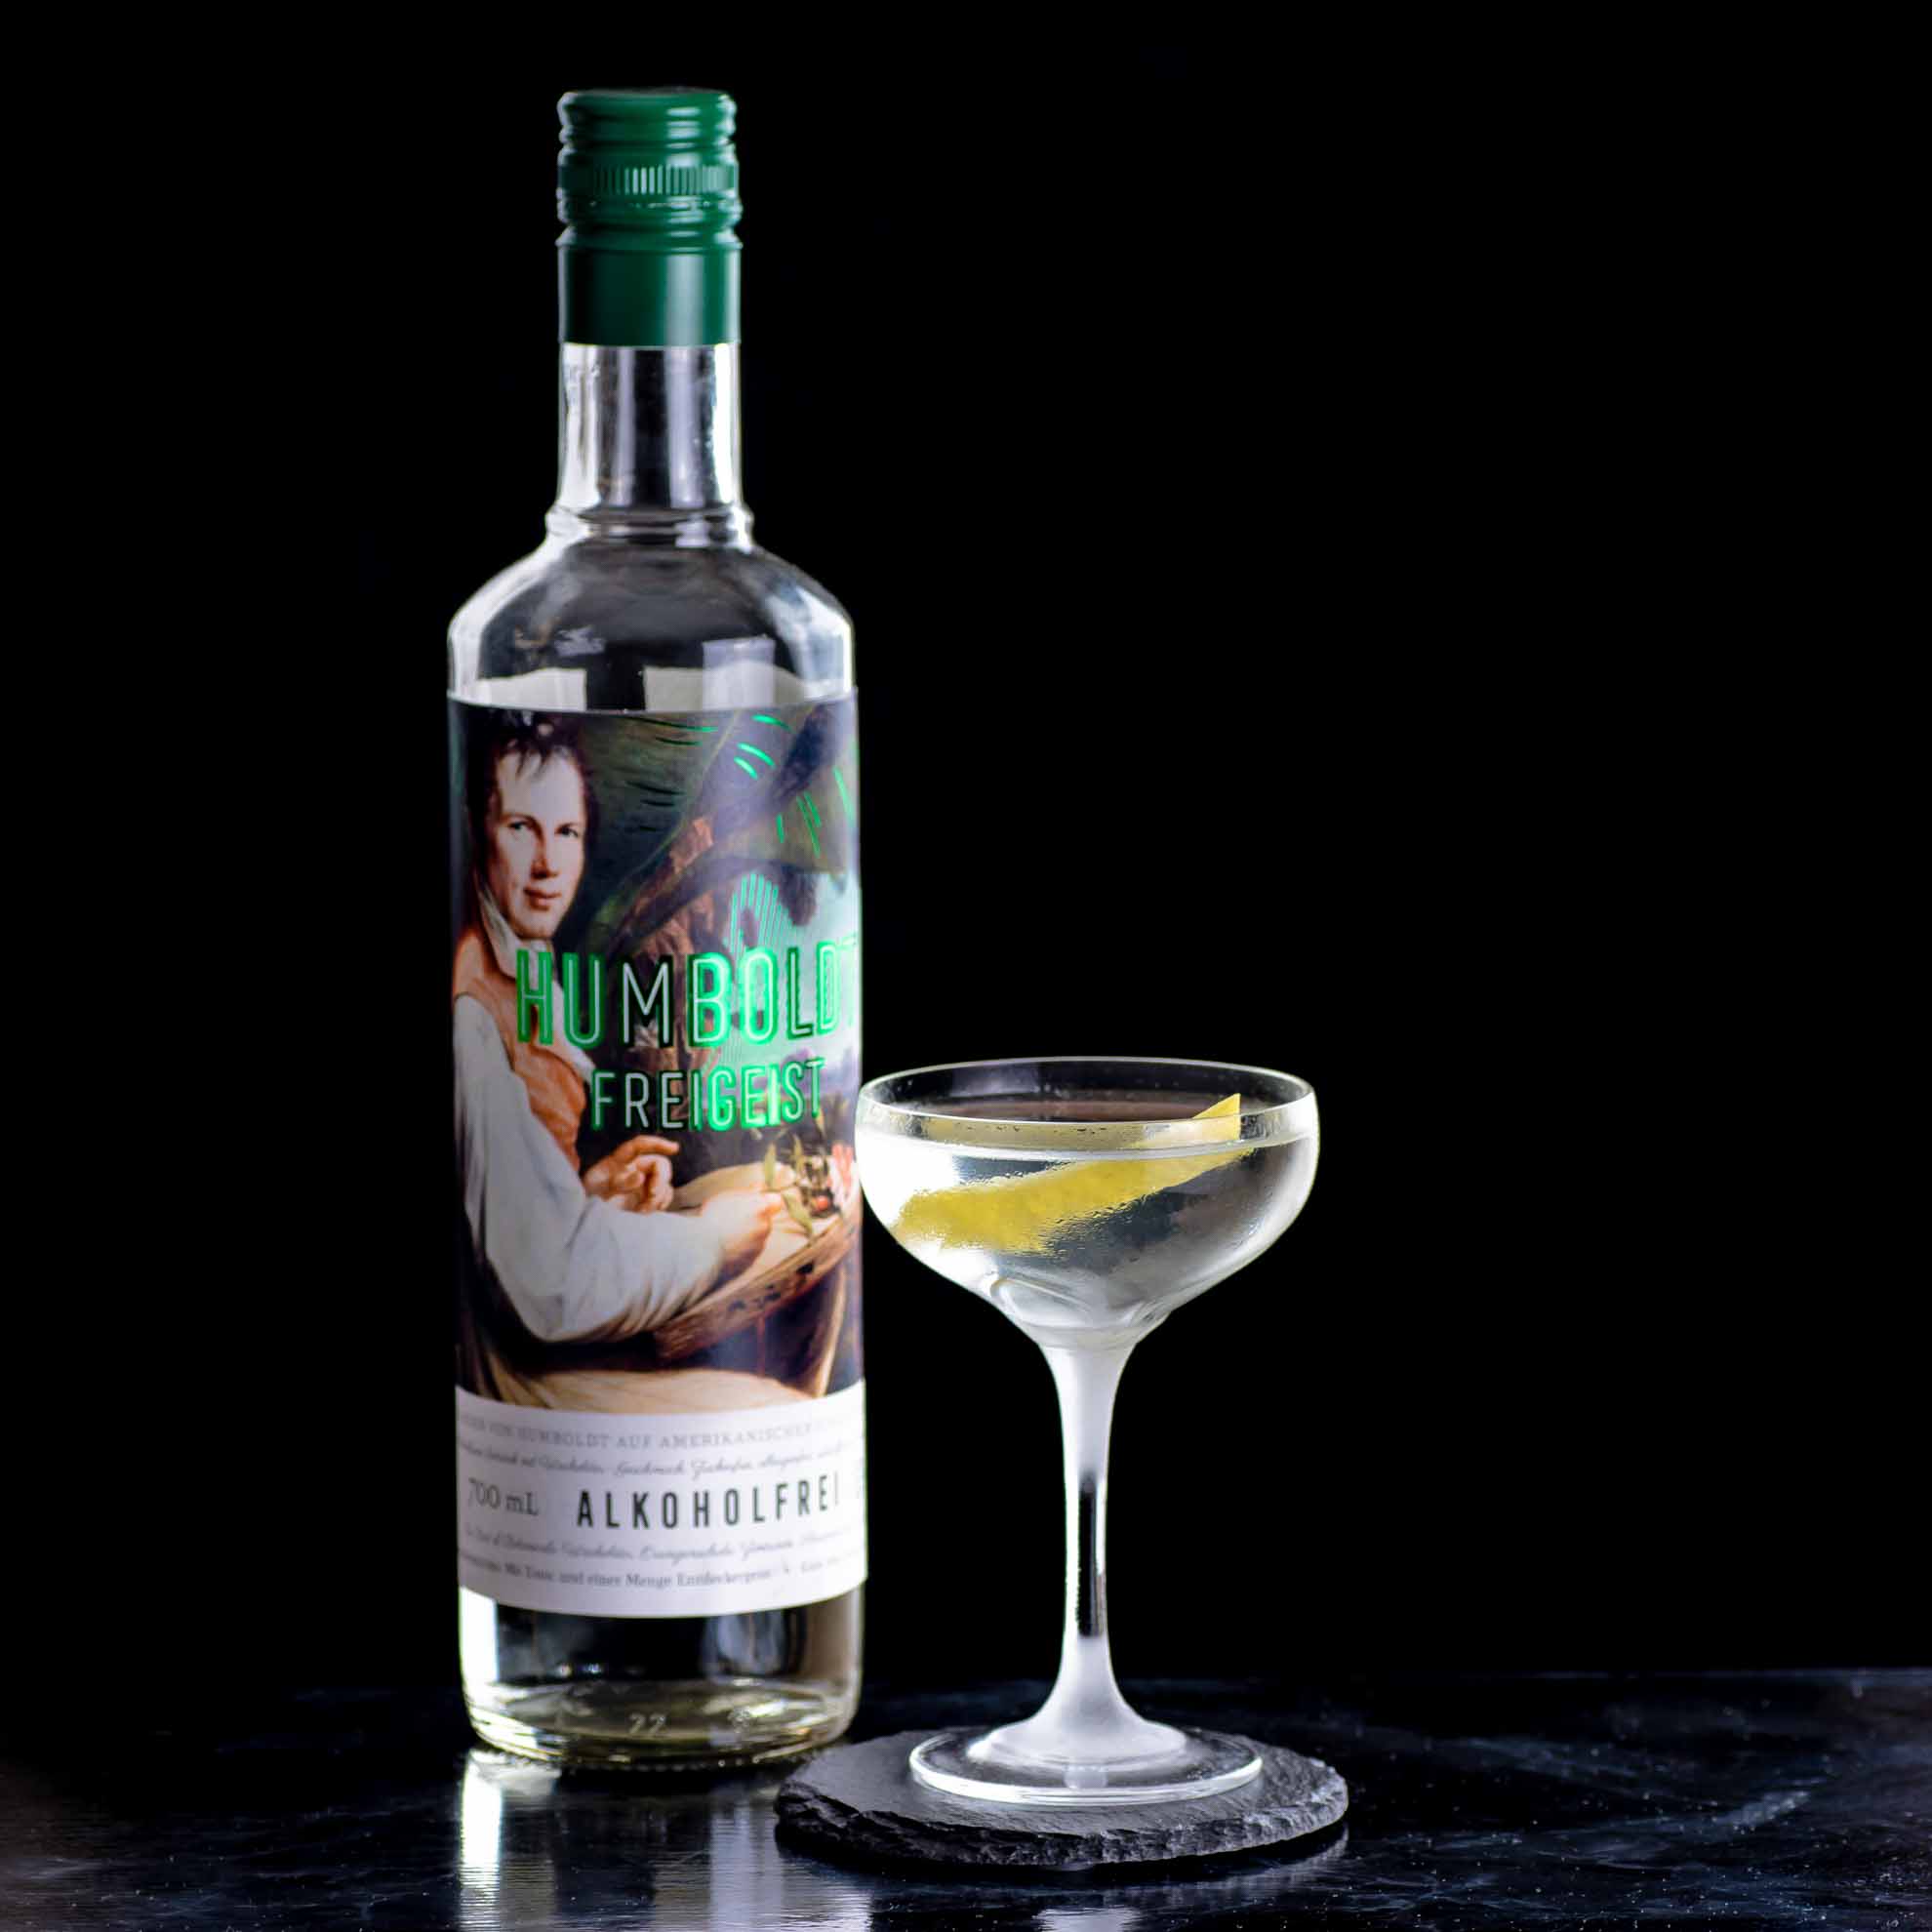 Humboldt Freigeist dans un martini pas entièrement sans alcool, mais très léger.